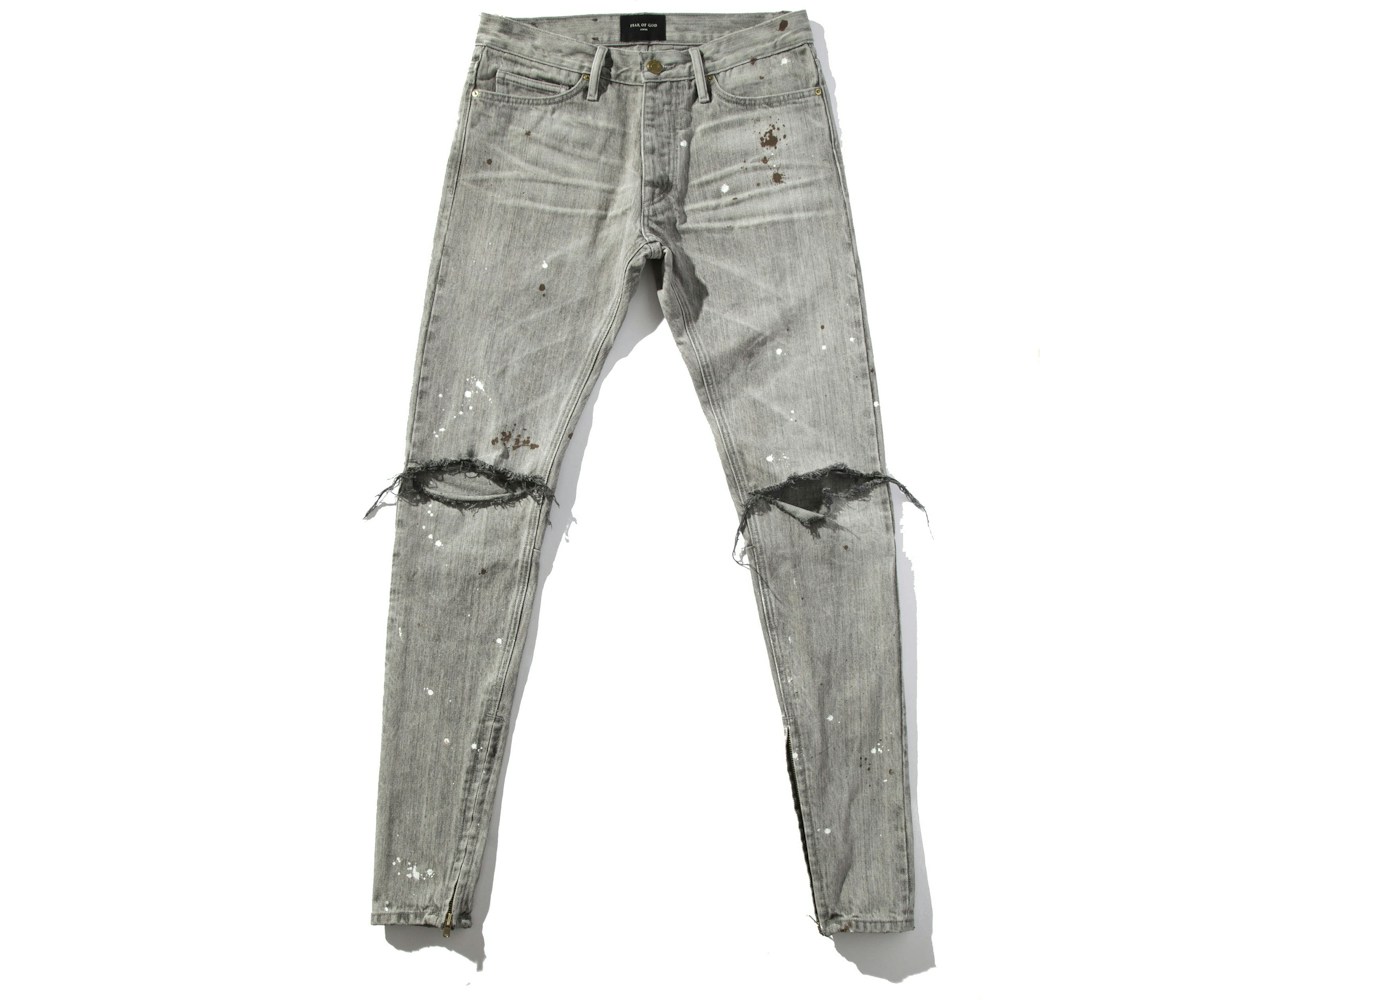 FEAR OF GOD Union LA Exclusive Distressed Selvedge Denim Jeans Vintage ...